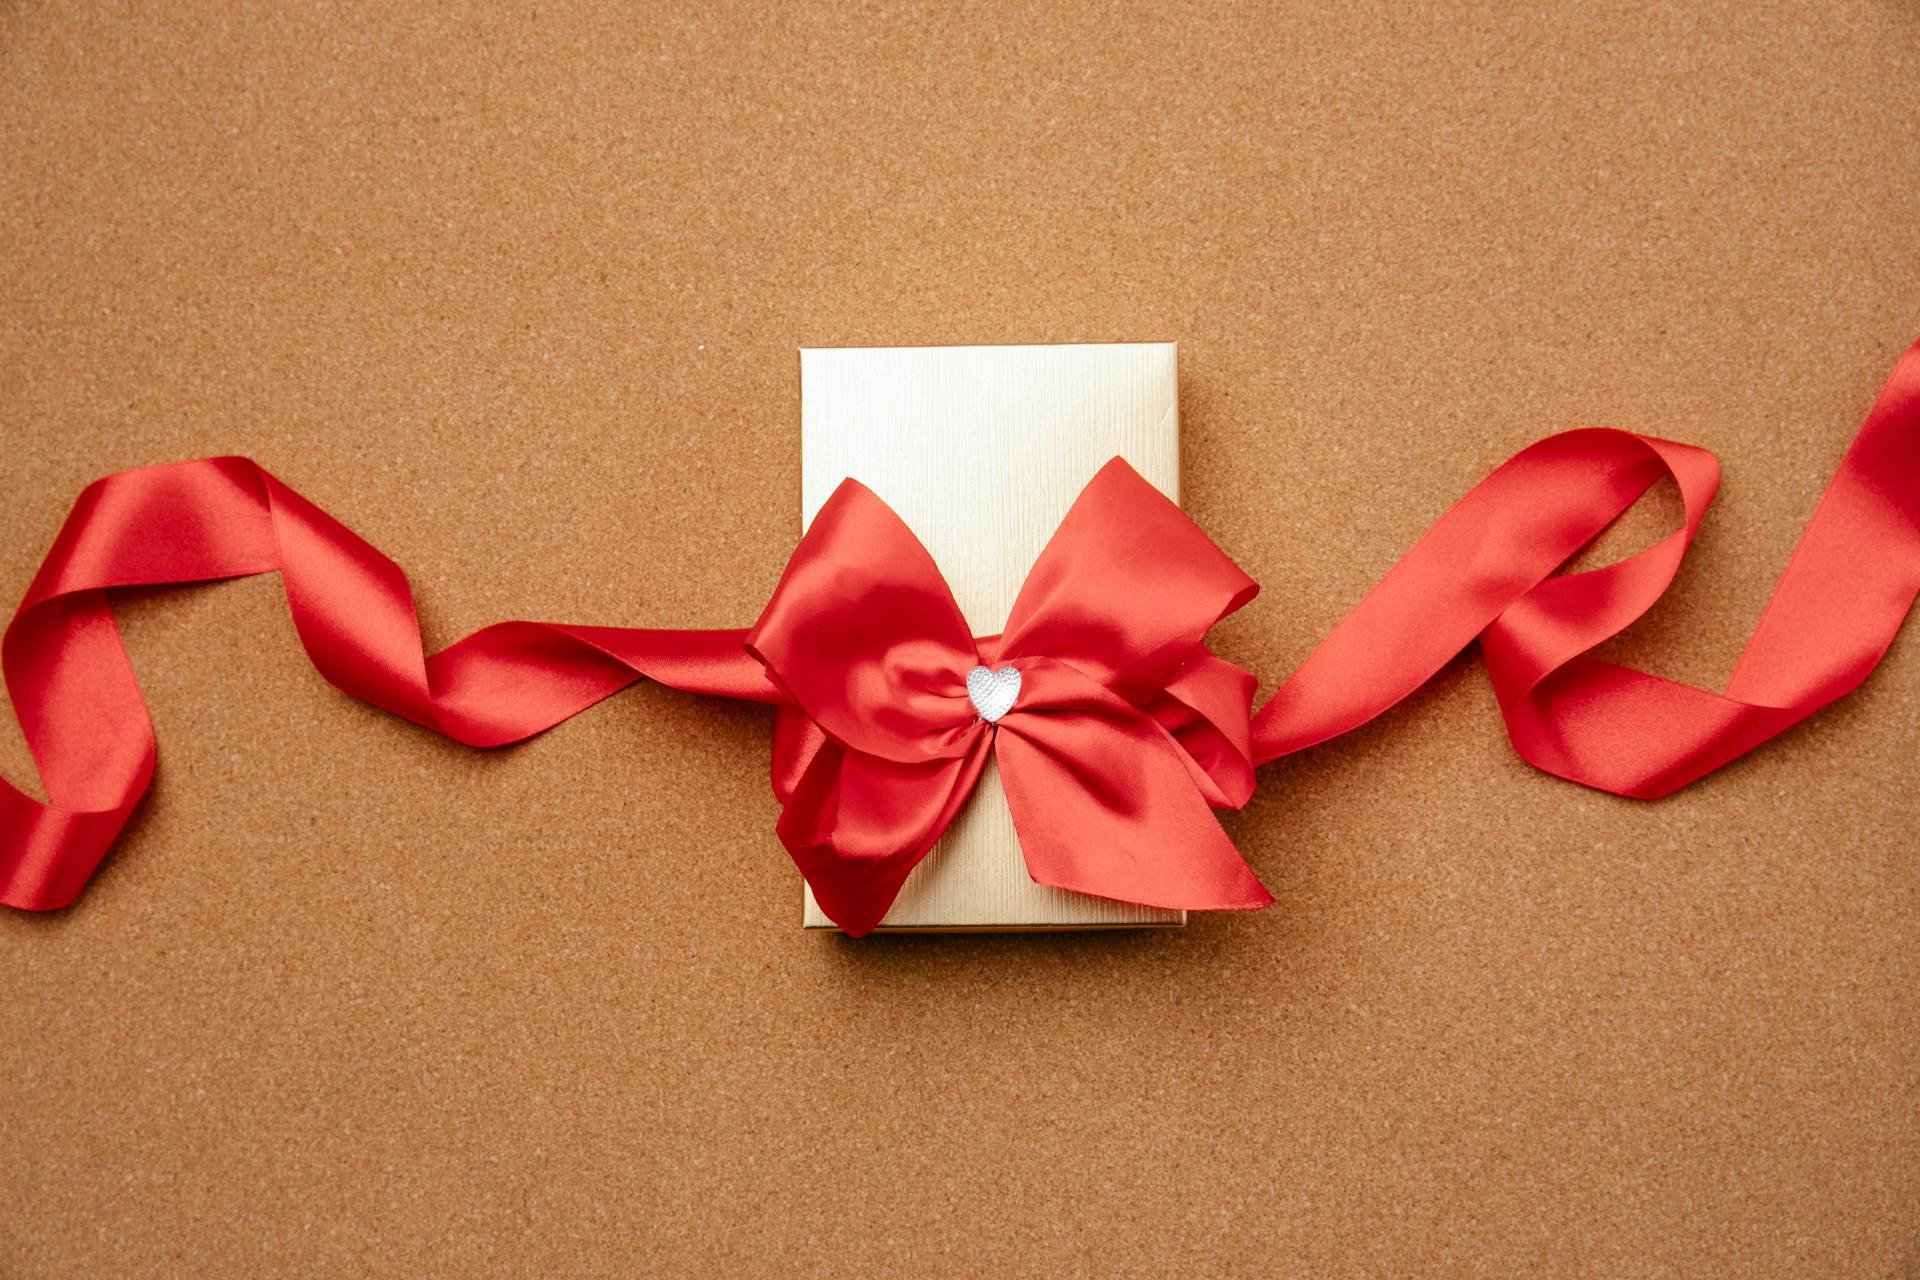 Una cajita de regalo decorada con un lazo rojo | Fuente: Pexels